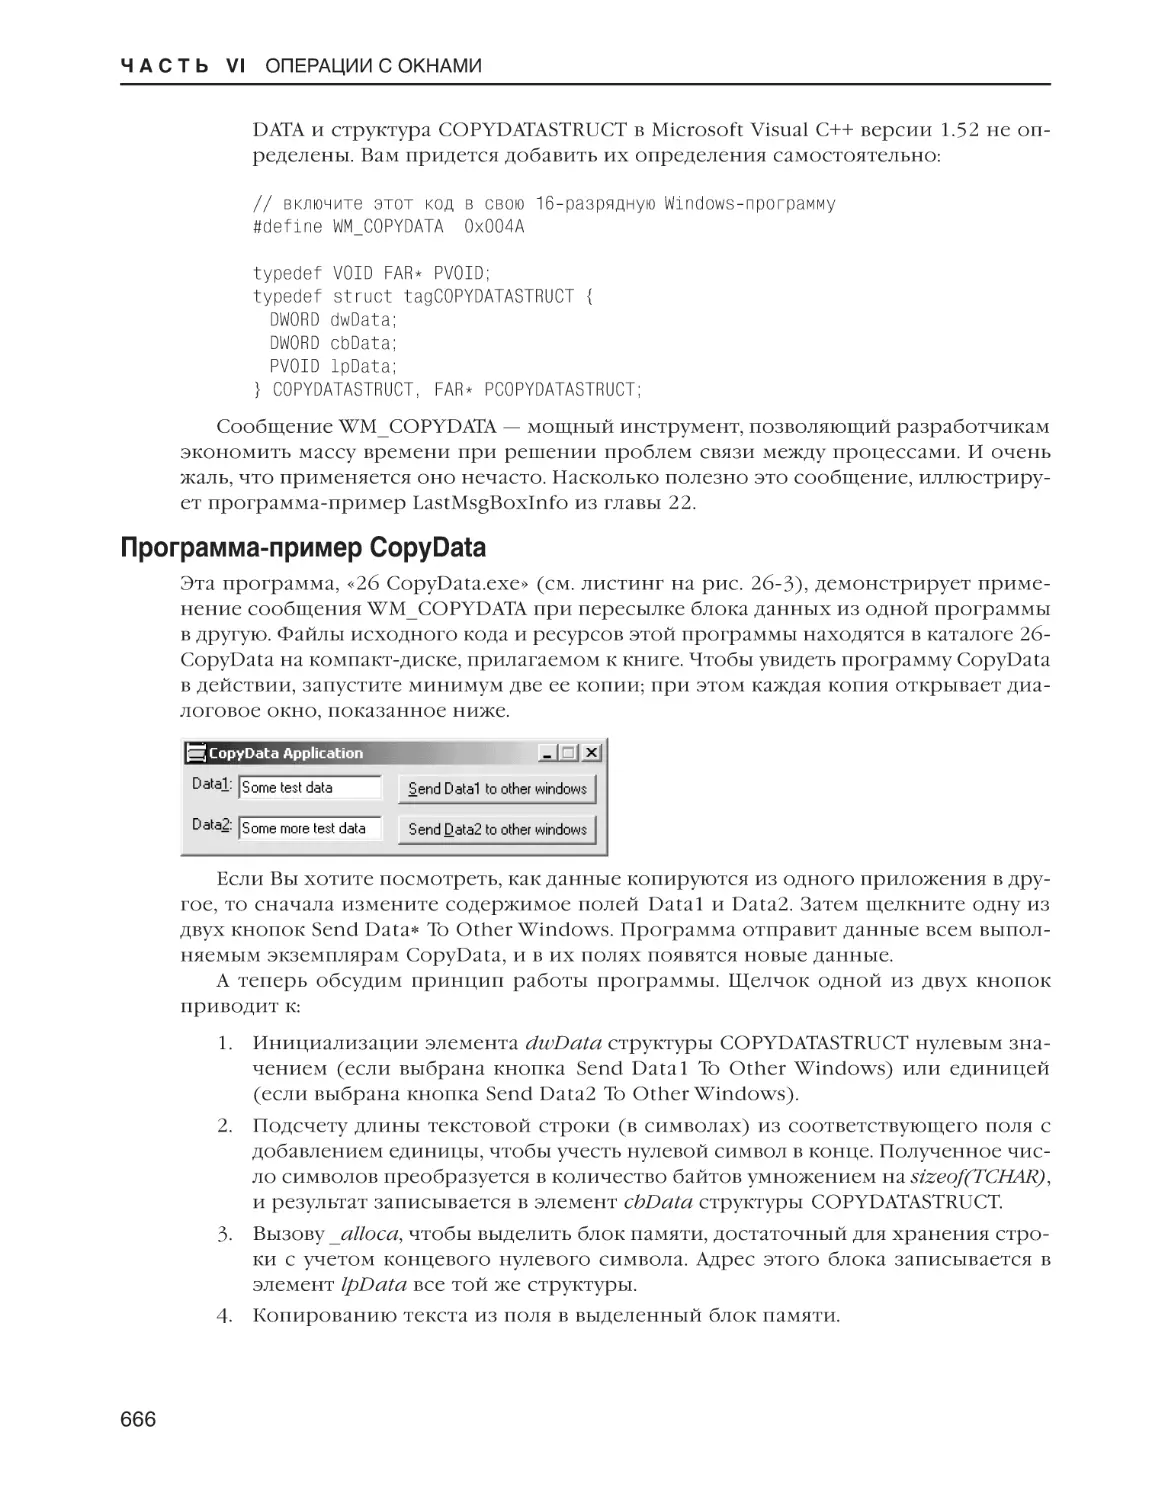 Программа-пример CopyData